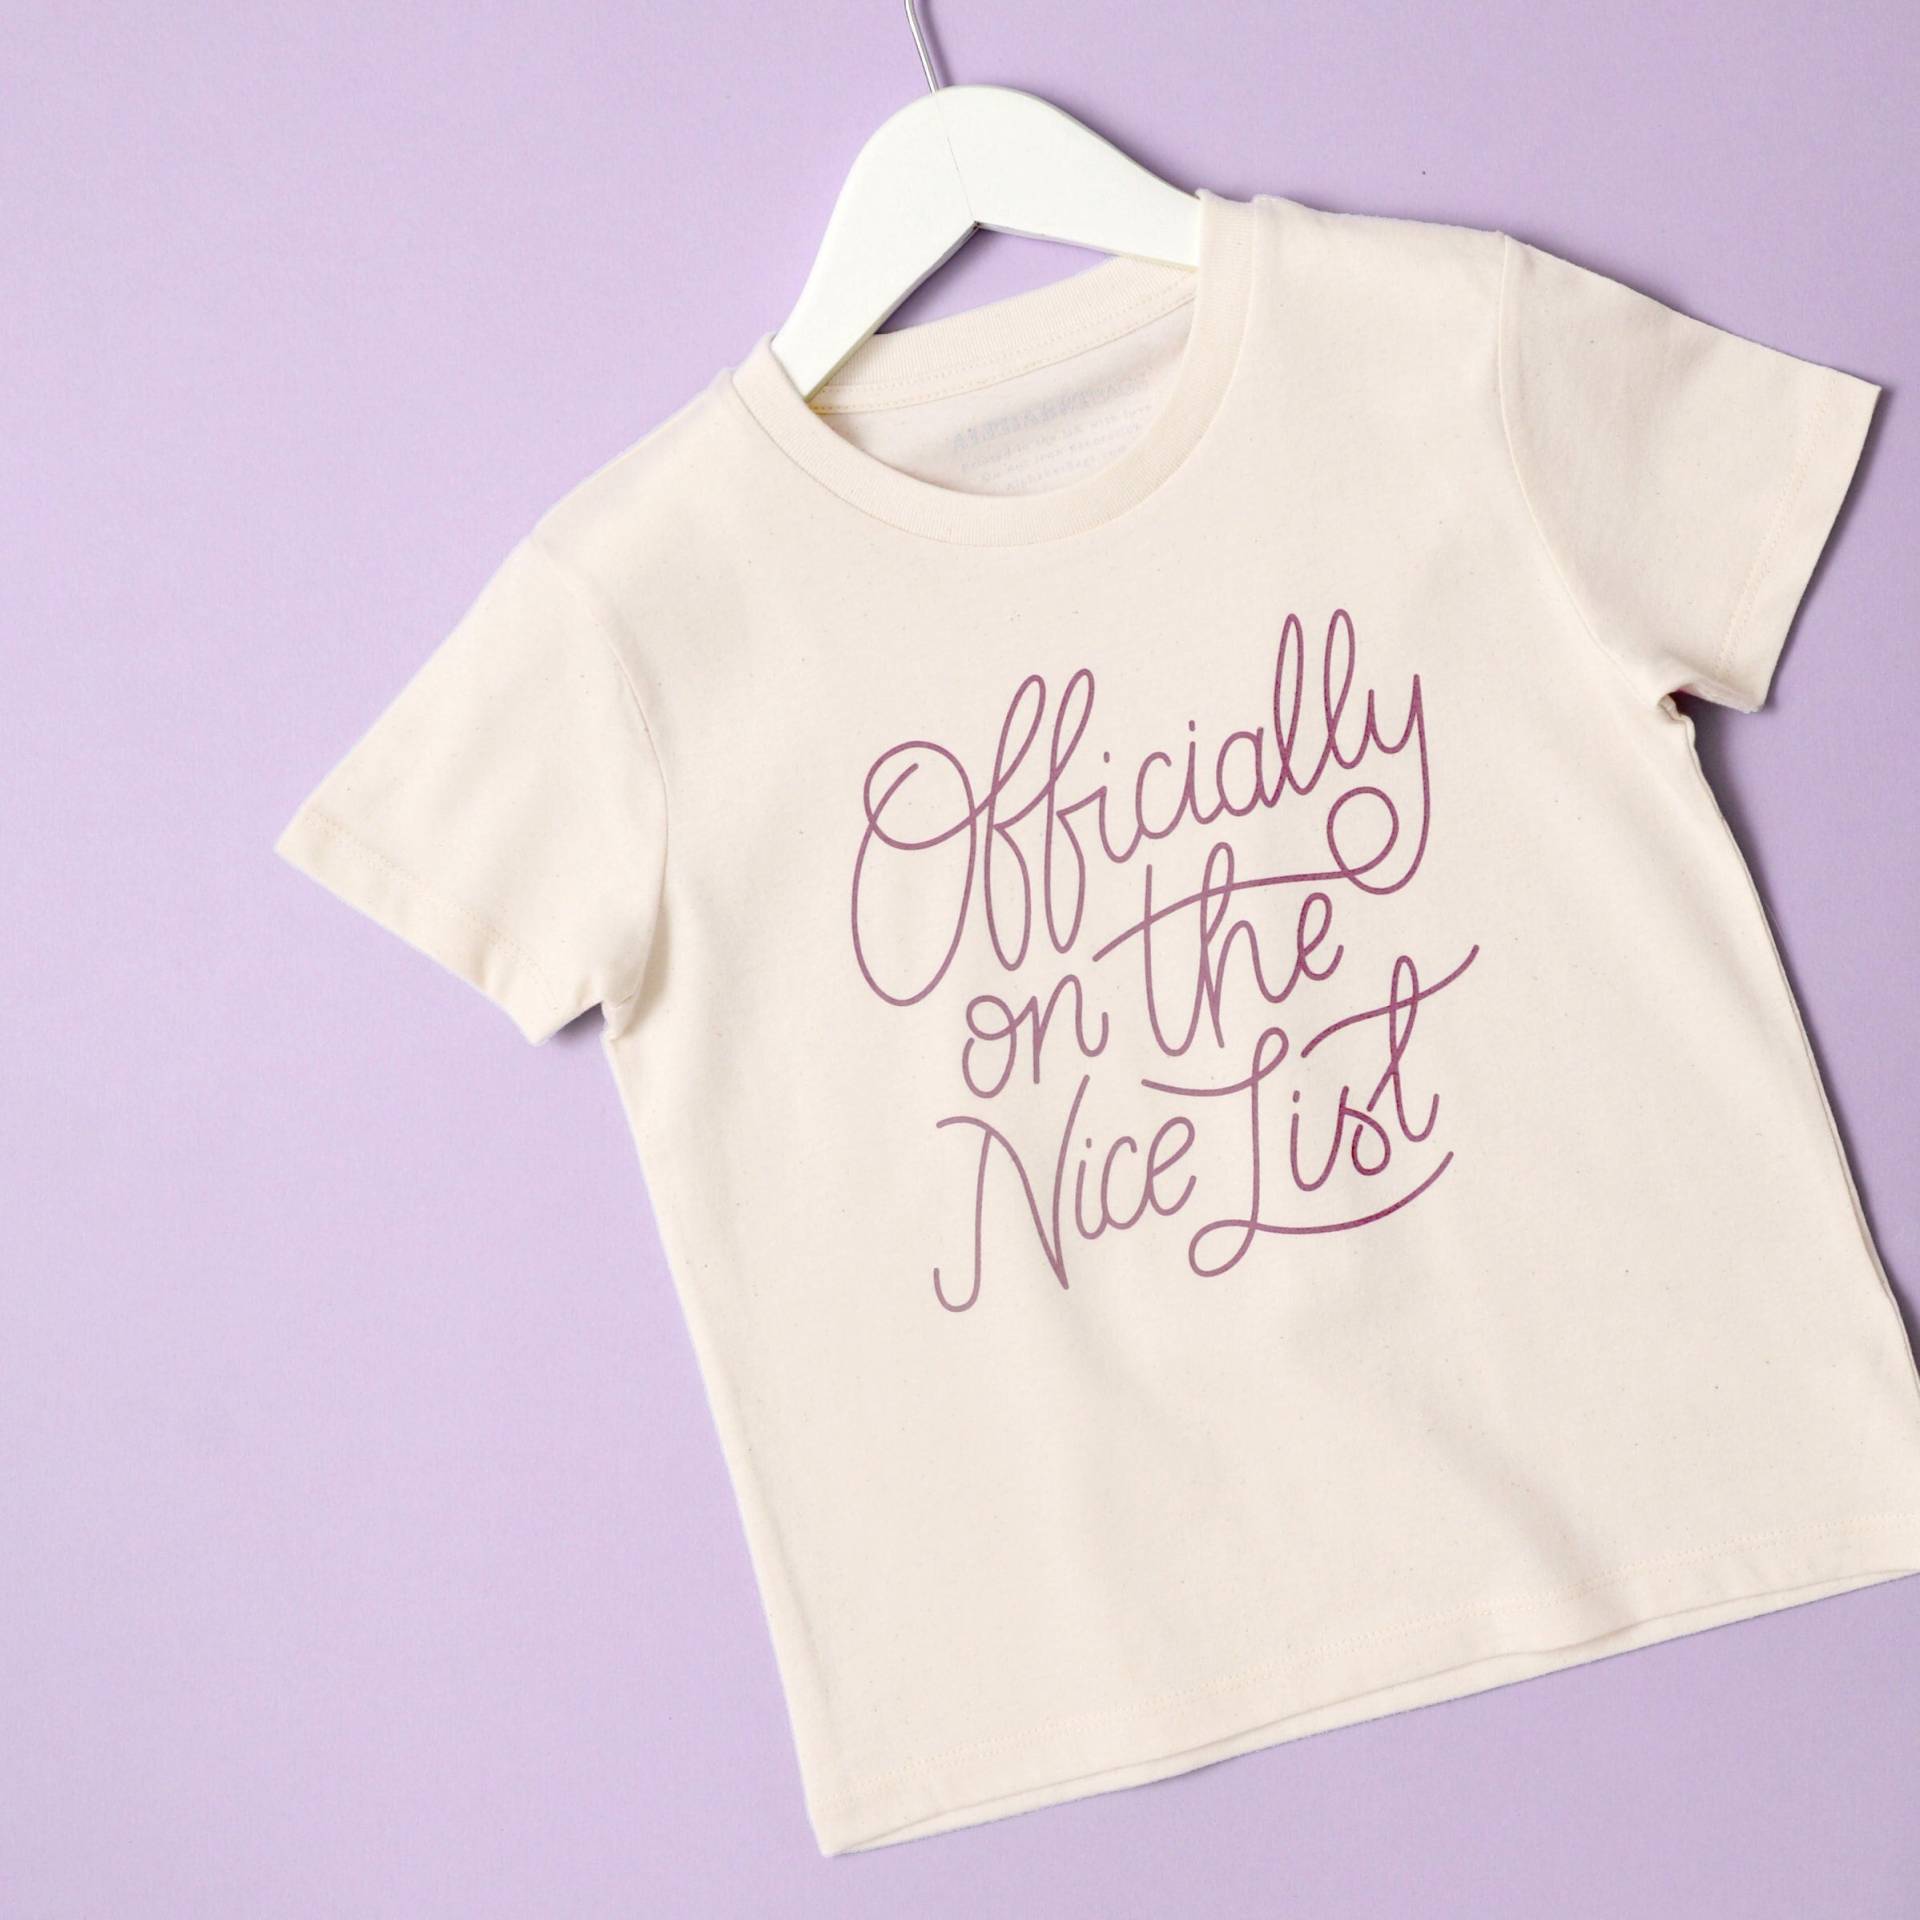 Offiziell Auf Der Nizza Liste Kinder T-Shirt - Lustiger Slogan Weihnachts Mädchen Jungen Weihnachten Mauve von AlphabetBags